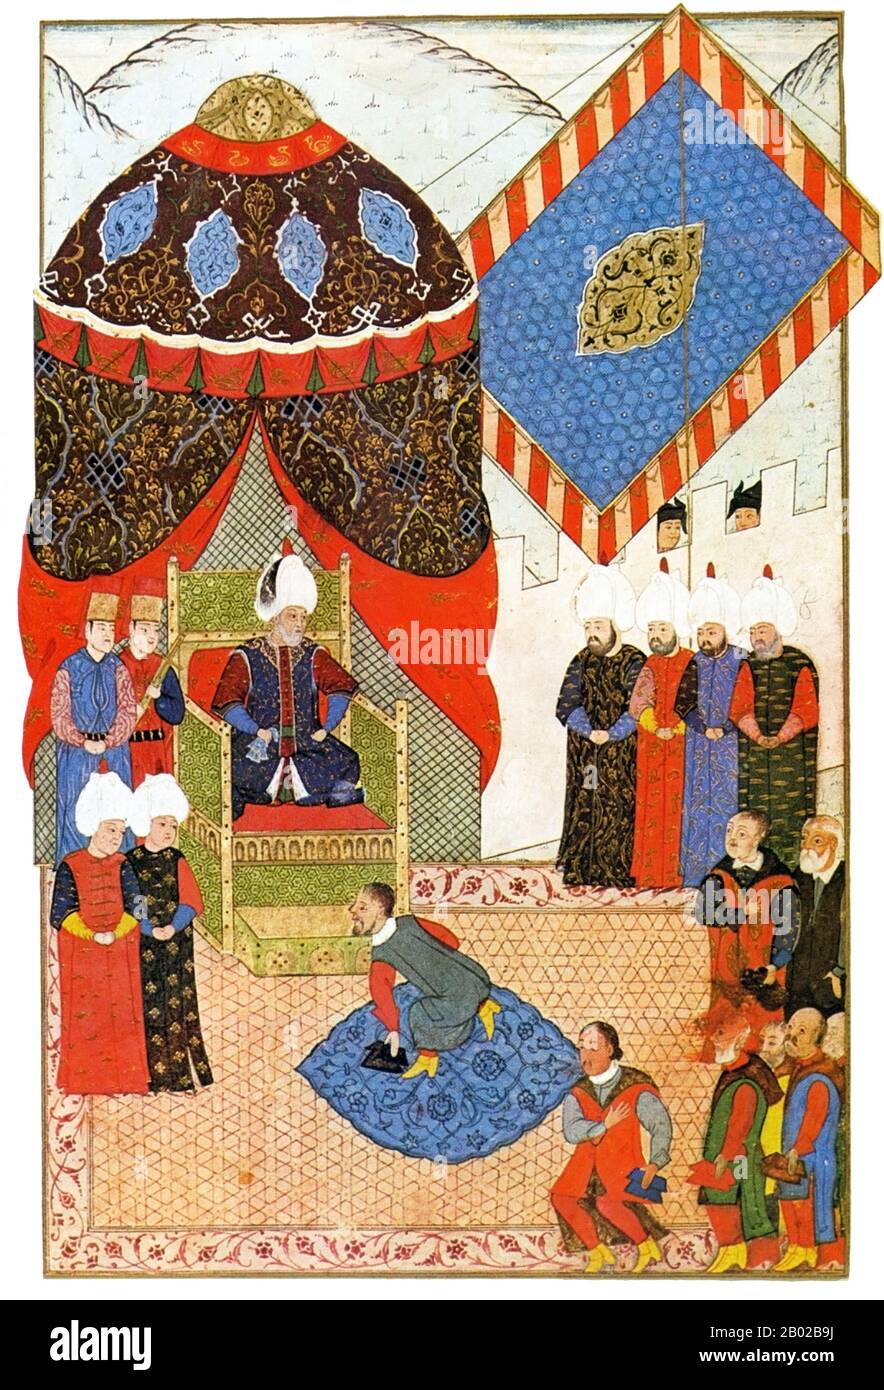 Sultan Süleyman I. (1494-1566), auch bekannt als 'Suleyman the Magnificent' und 'Suleyman the Lawmaker', war der 10. Und längste regierende Sultan des Osmanenreiches. Er führte seine Armeen persönlich dazu, Siebenbürgen, das Kaspische, weite Teile des Nahen Ostens und den Maghreb zu erobern. Er führte weitreichende Reformen in den Bereichen türkische Gesetzgebung, Bildung, Besteuerung und Strafrecht durch und wurde als Dichter und Goldschmied hoch geachtet. Süleyman übersah auch ein goldenes Zeitalter in der Entwicklung von Kunst, Literatur und Architektur im Osmanenreich. Stockfoto